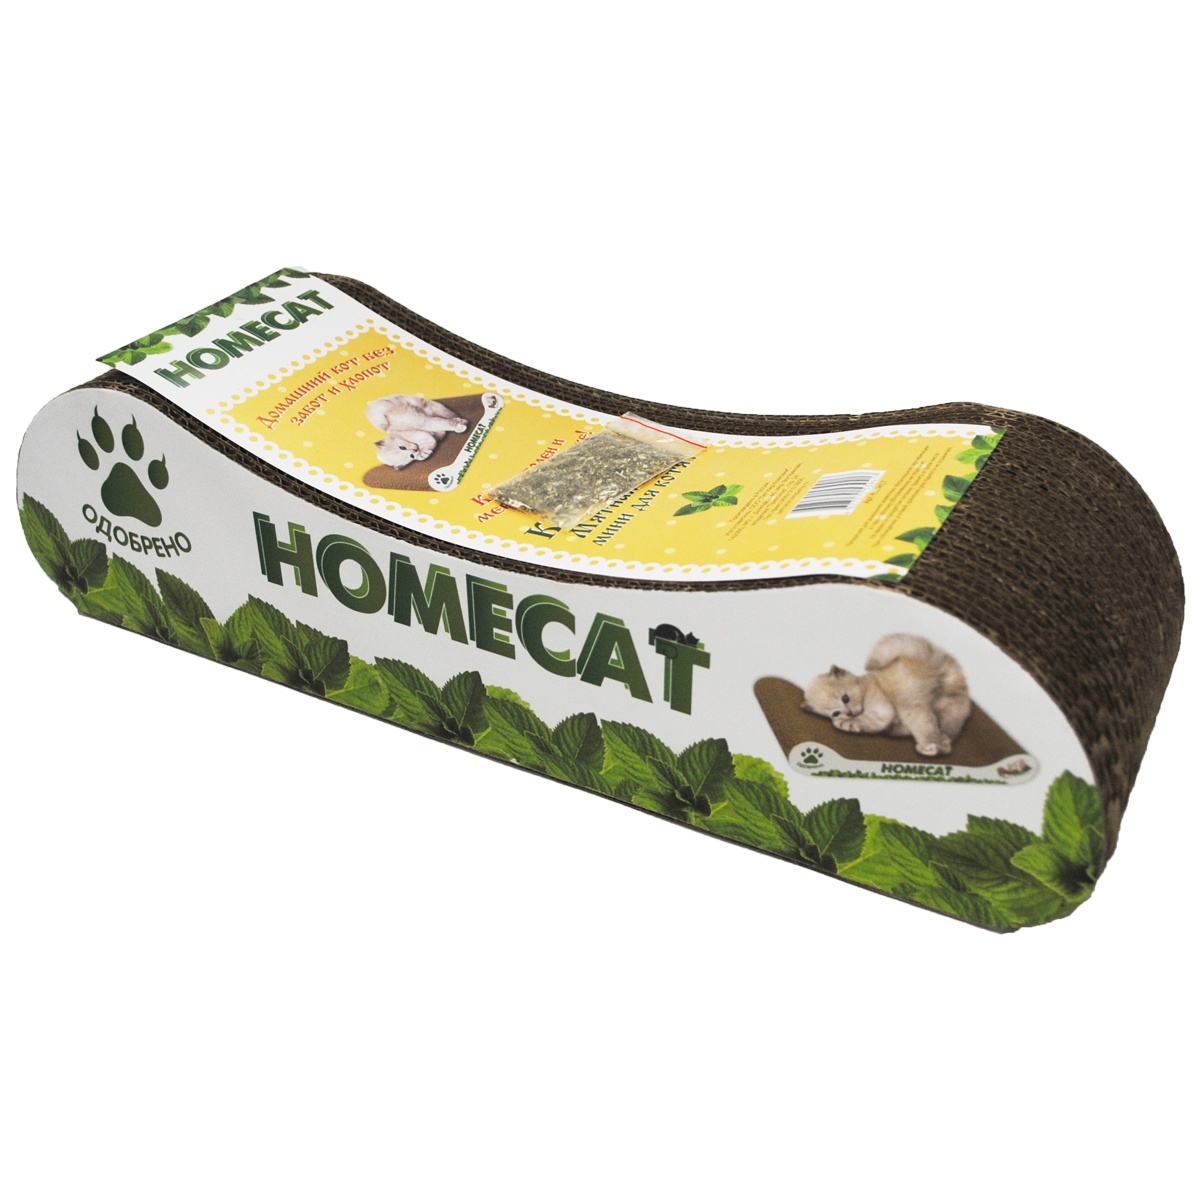 Homecat Homecat когтеточка Мятная волна, гофрокартон, 38*12*9 см (500 г) когтеточка homecat когтеточка гофрокартоная мятная волна штиль 0 баллов 47х22х4 см